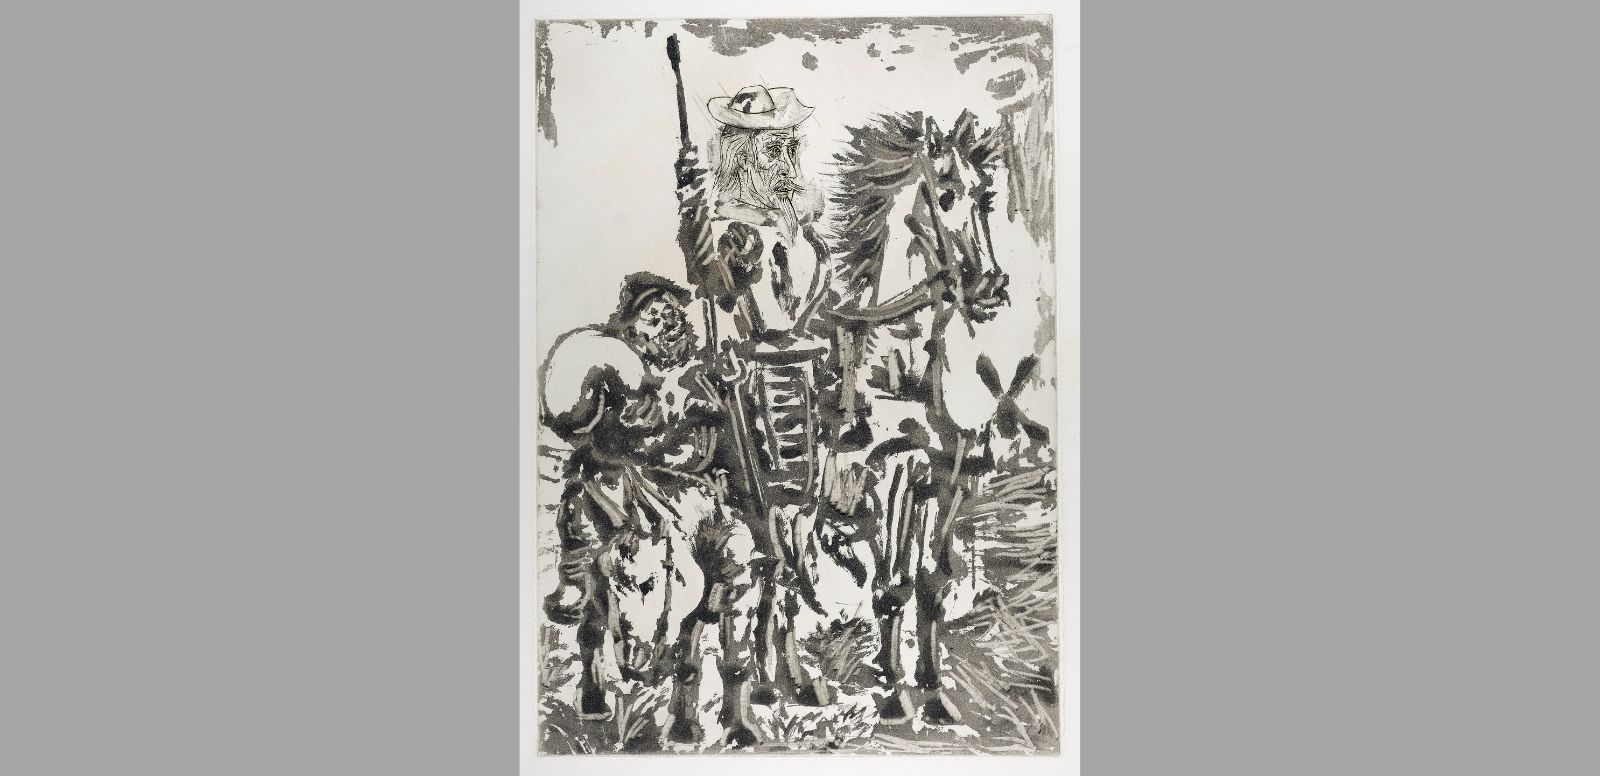 Pablo Picasso, "Don Quijote y Sancho Panza", 1937